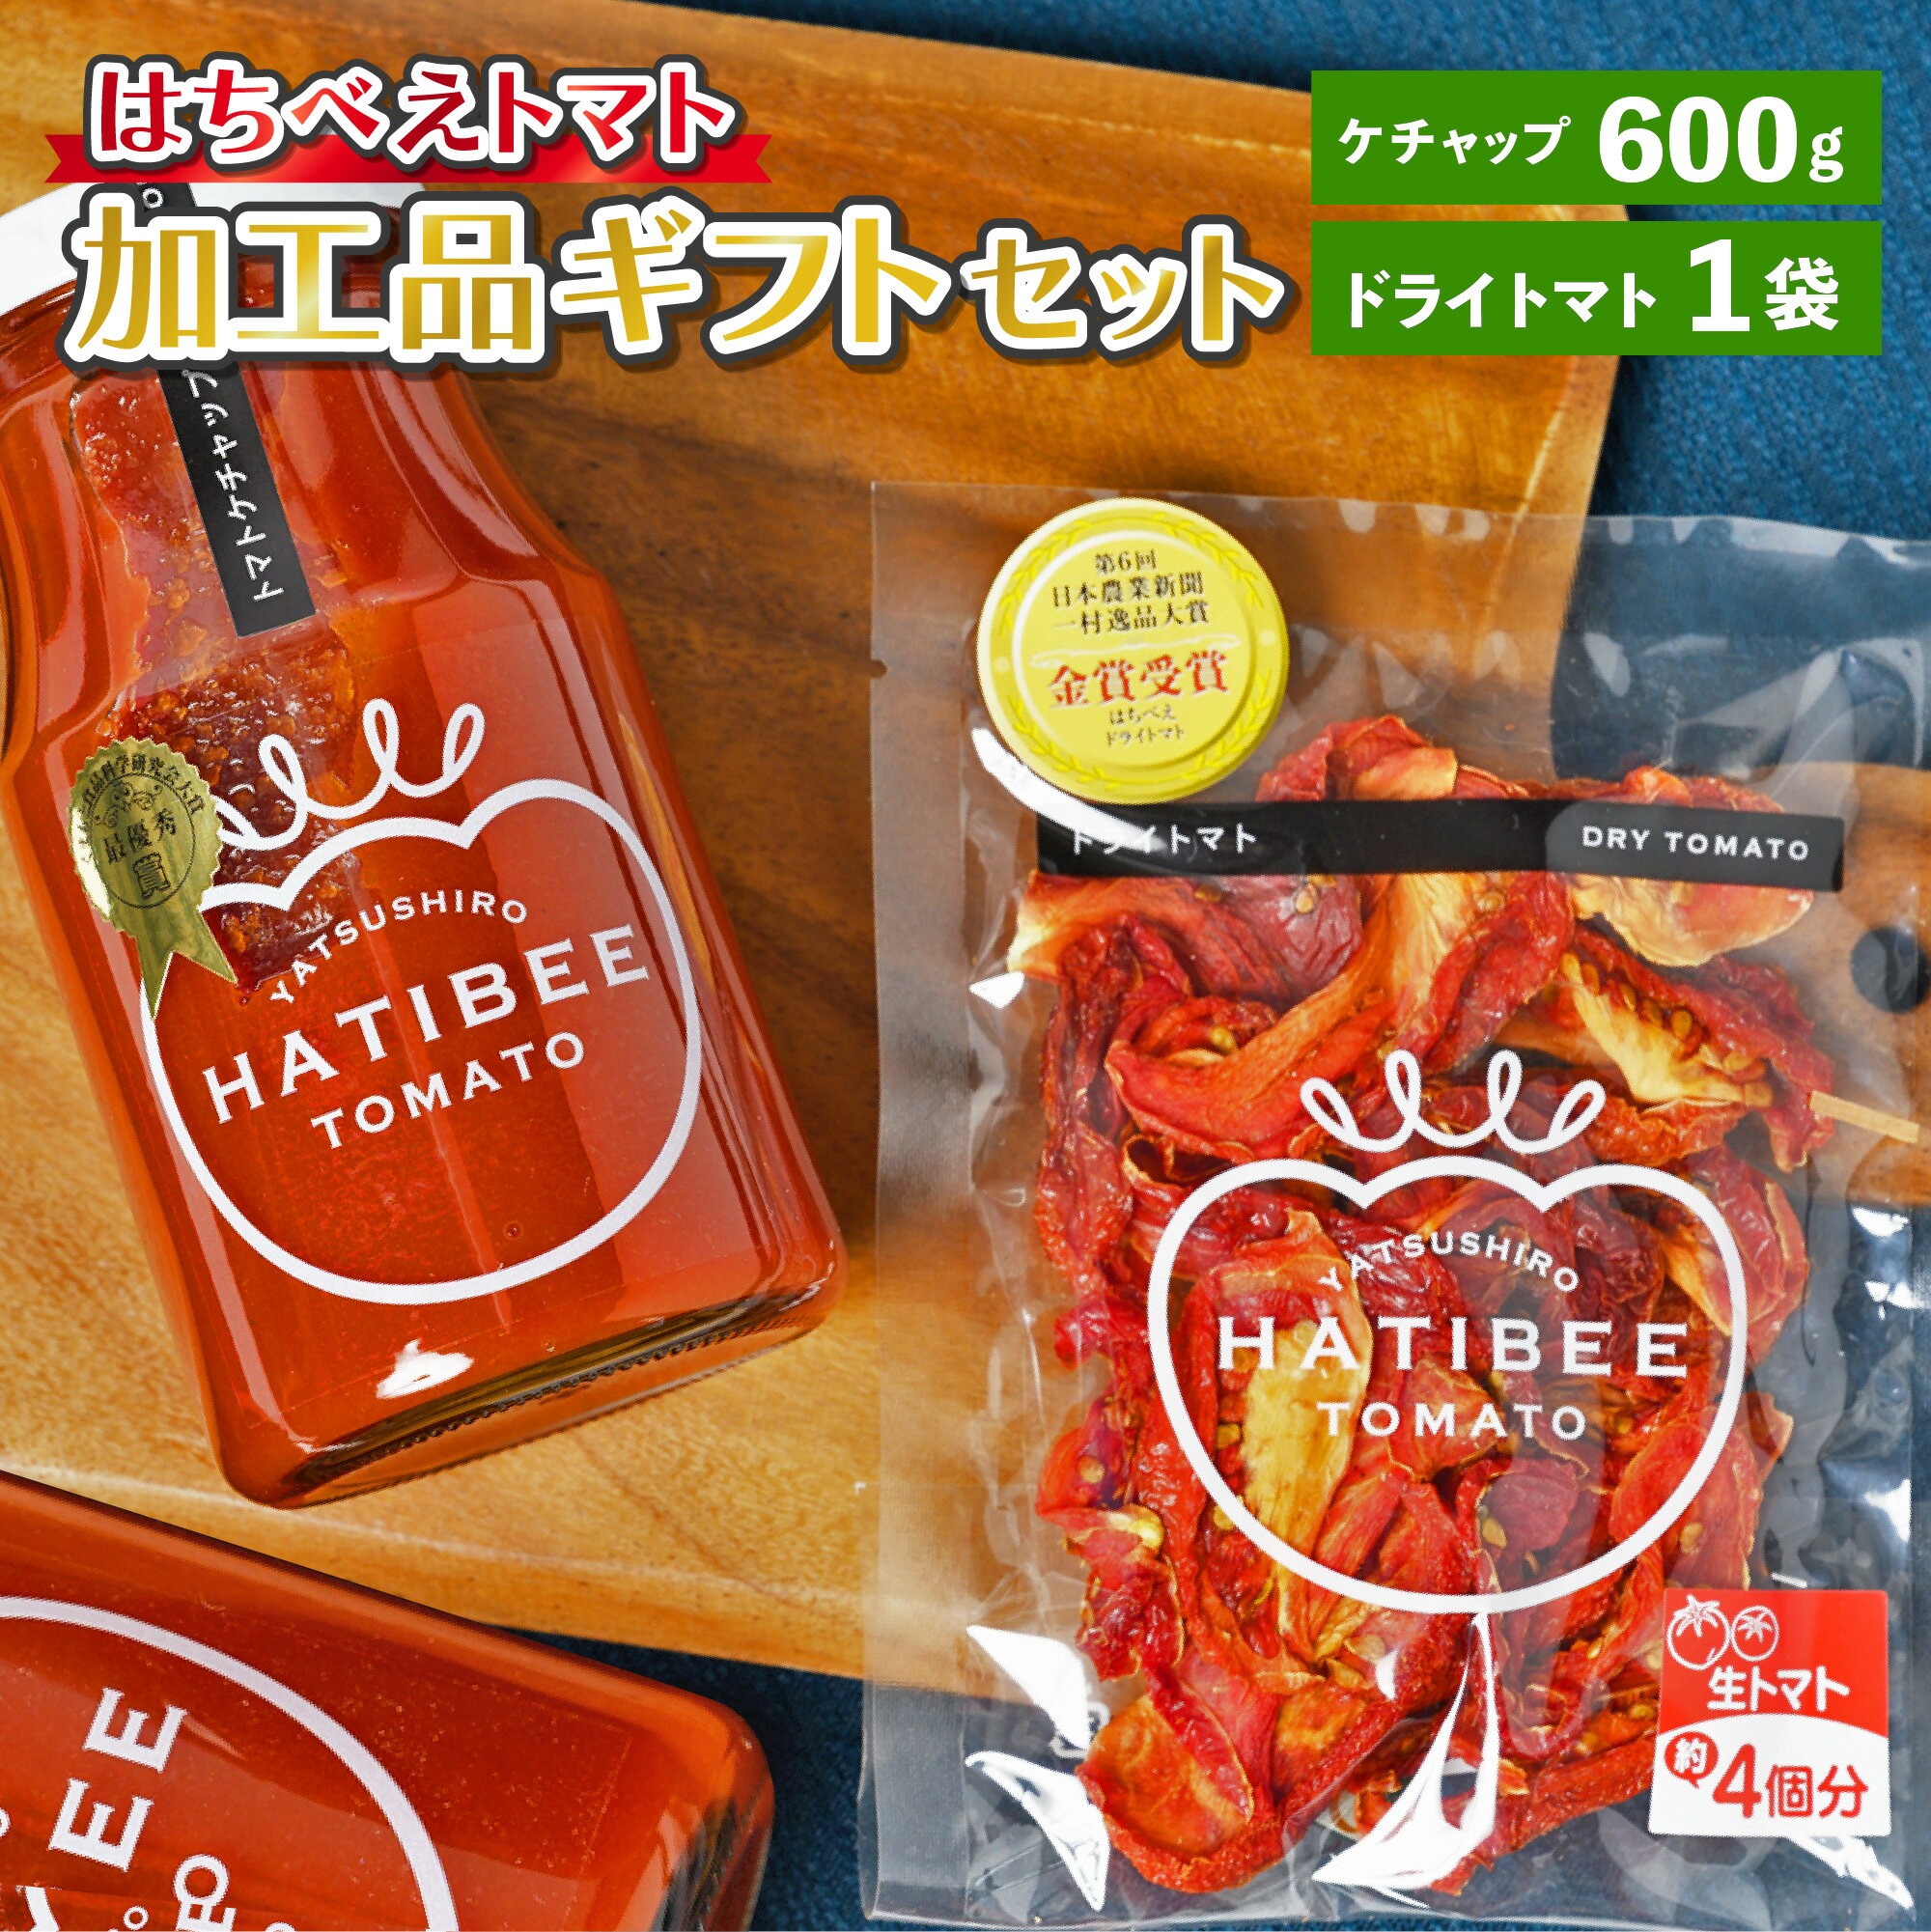 【ふるさと納税】はちべえトマト 加工品ギフトセット トマトケ